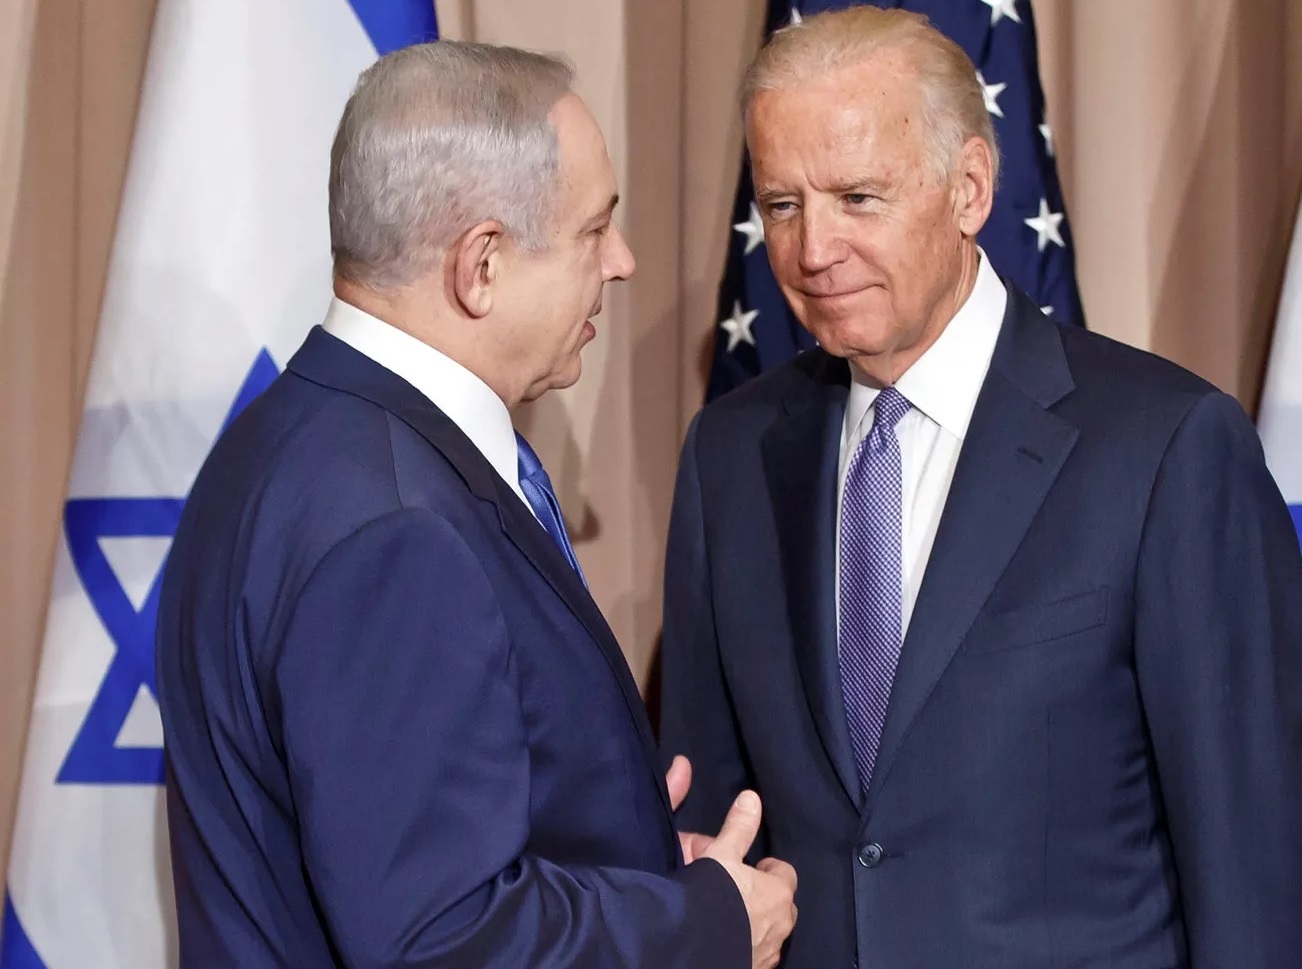 نتانیاهو بزودی اسرائیل را برای آمریکا از متحد به رقیب تبدیل می کند؟ / استراتژی بایدن فعلا همکاری در حوزه هایی مانند ایران است